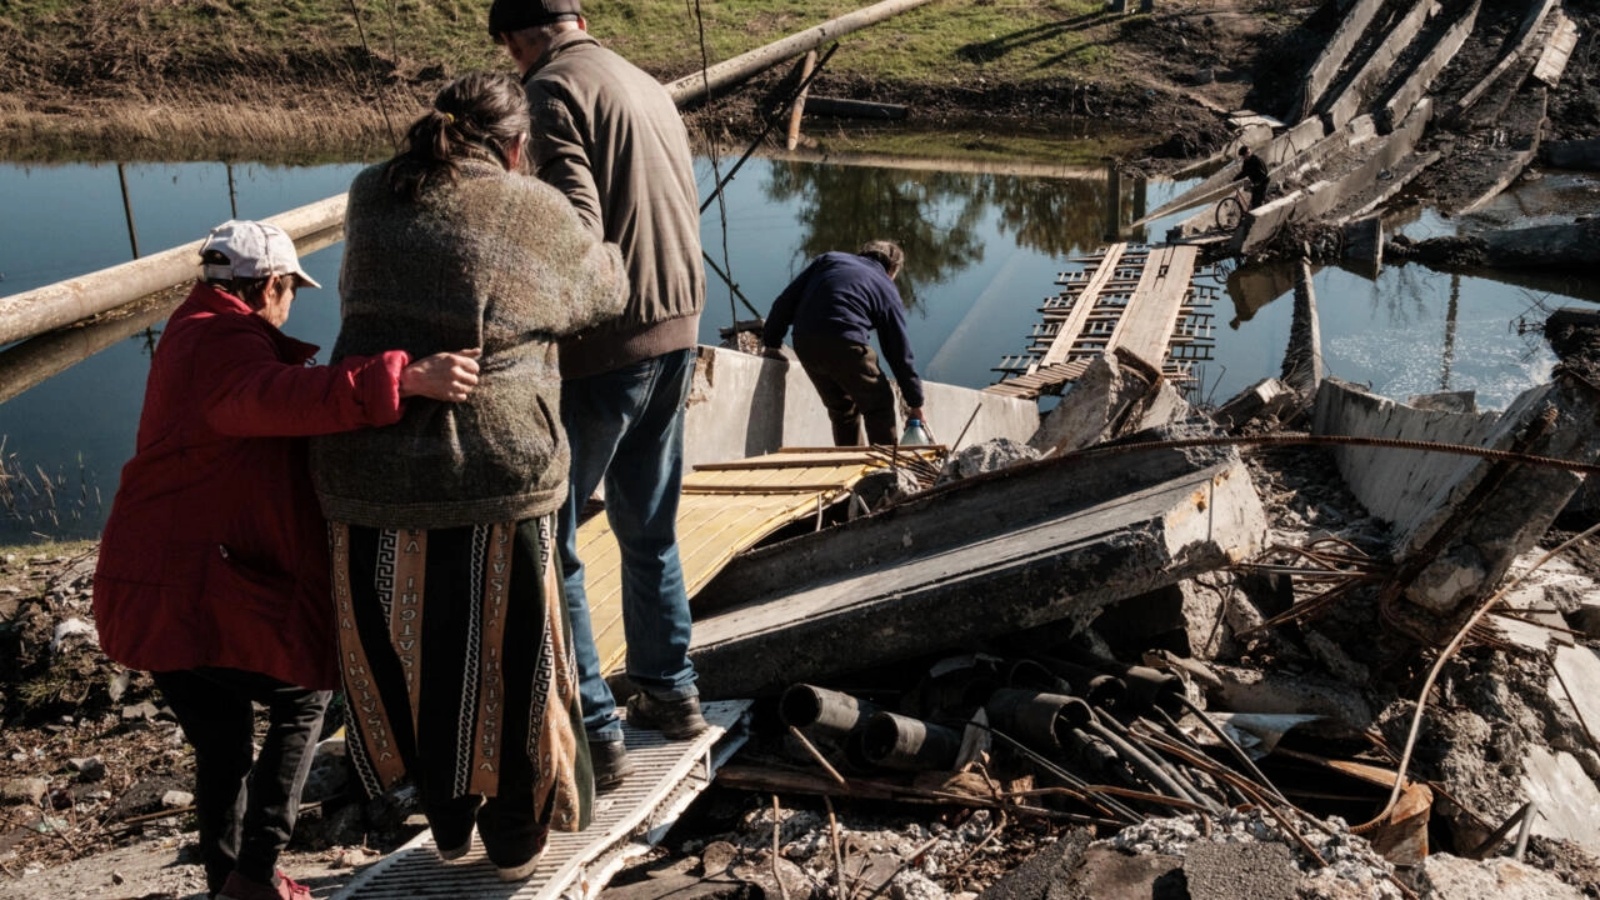 ريما تسيكالنكو (65 عاما) خلال نقلها على جسر مدمر للحصول على معاشها في مدينة باخموت الأوكرانية في 07 أكتوبر 2022